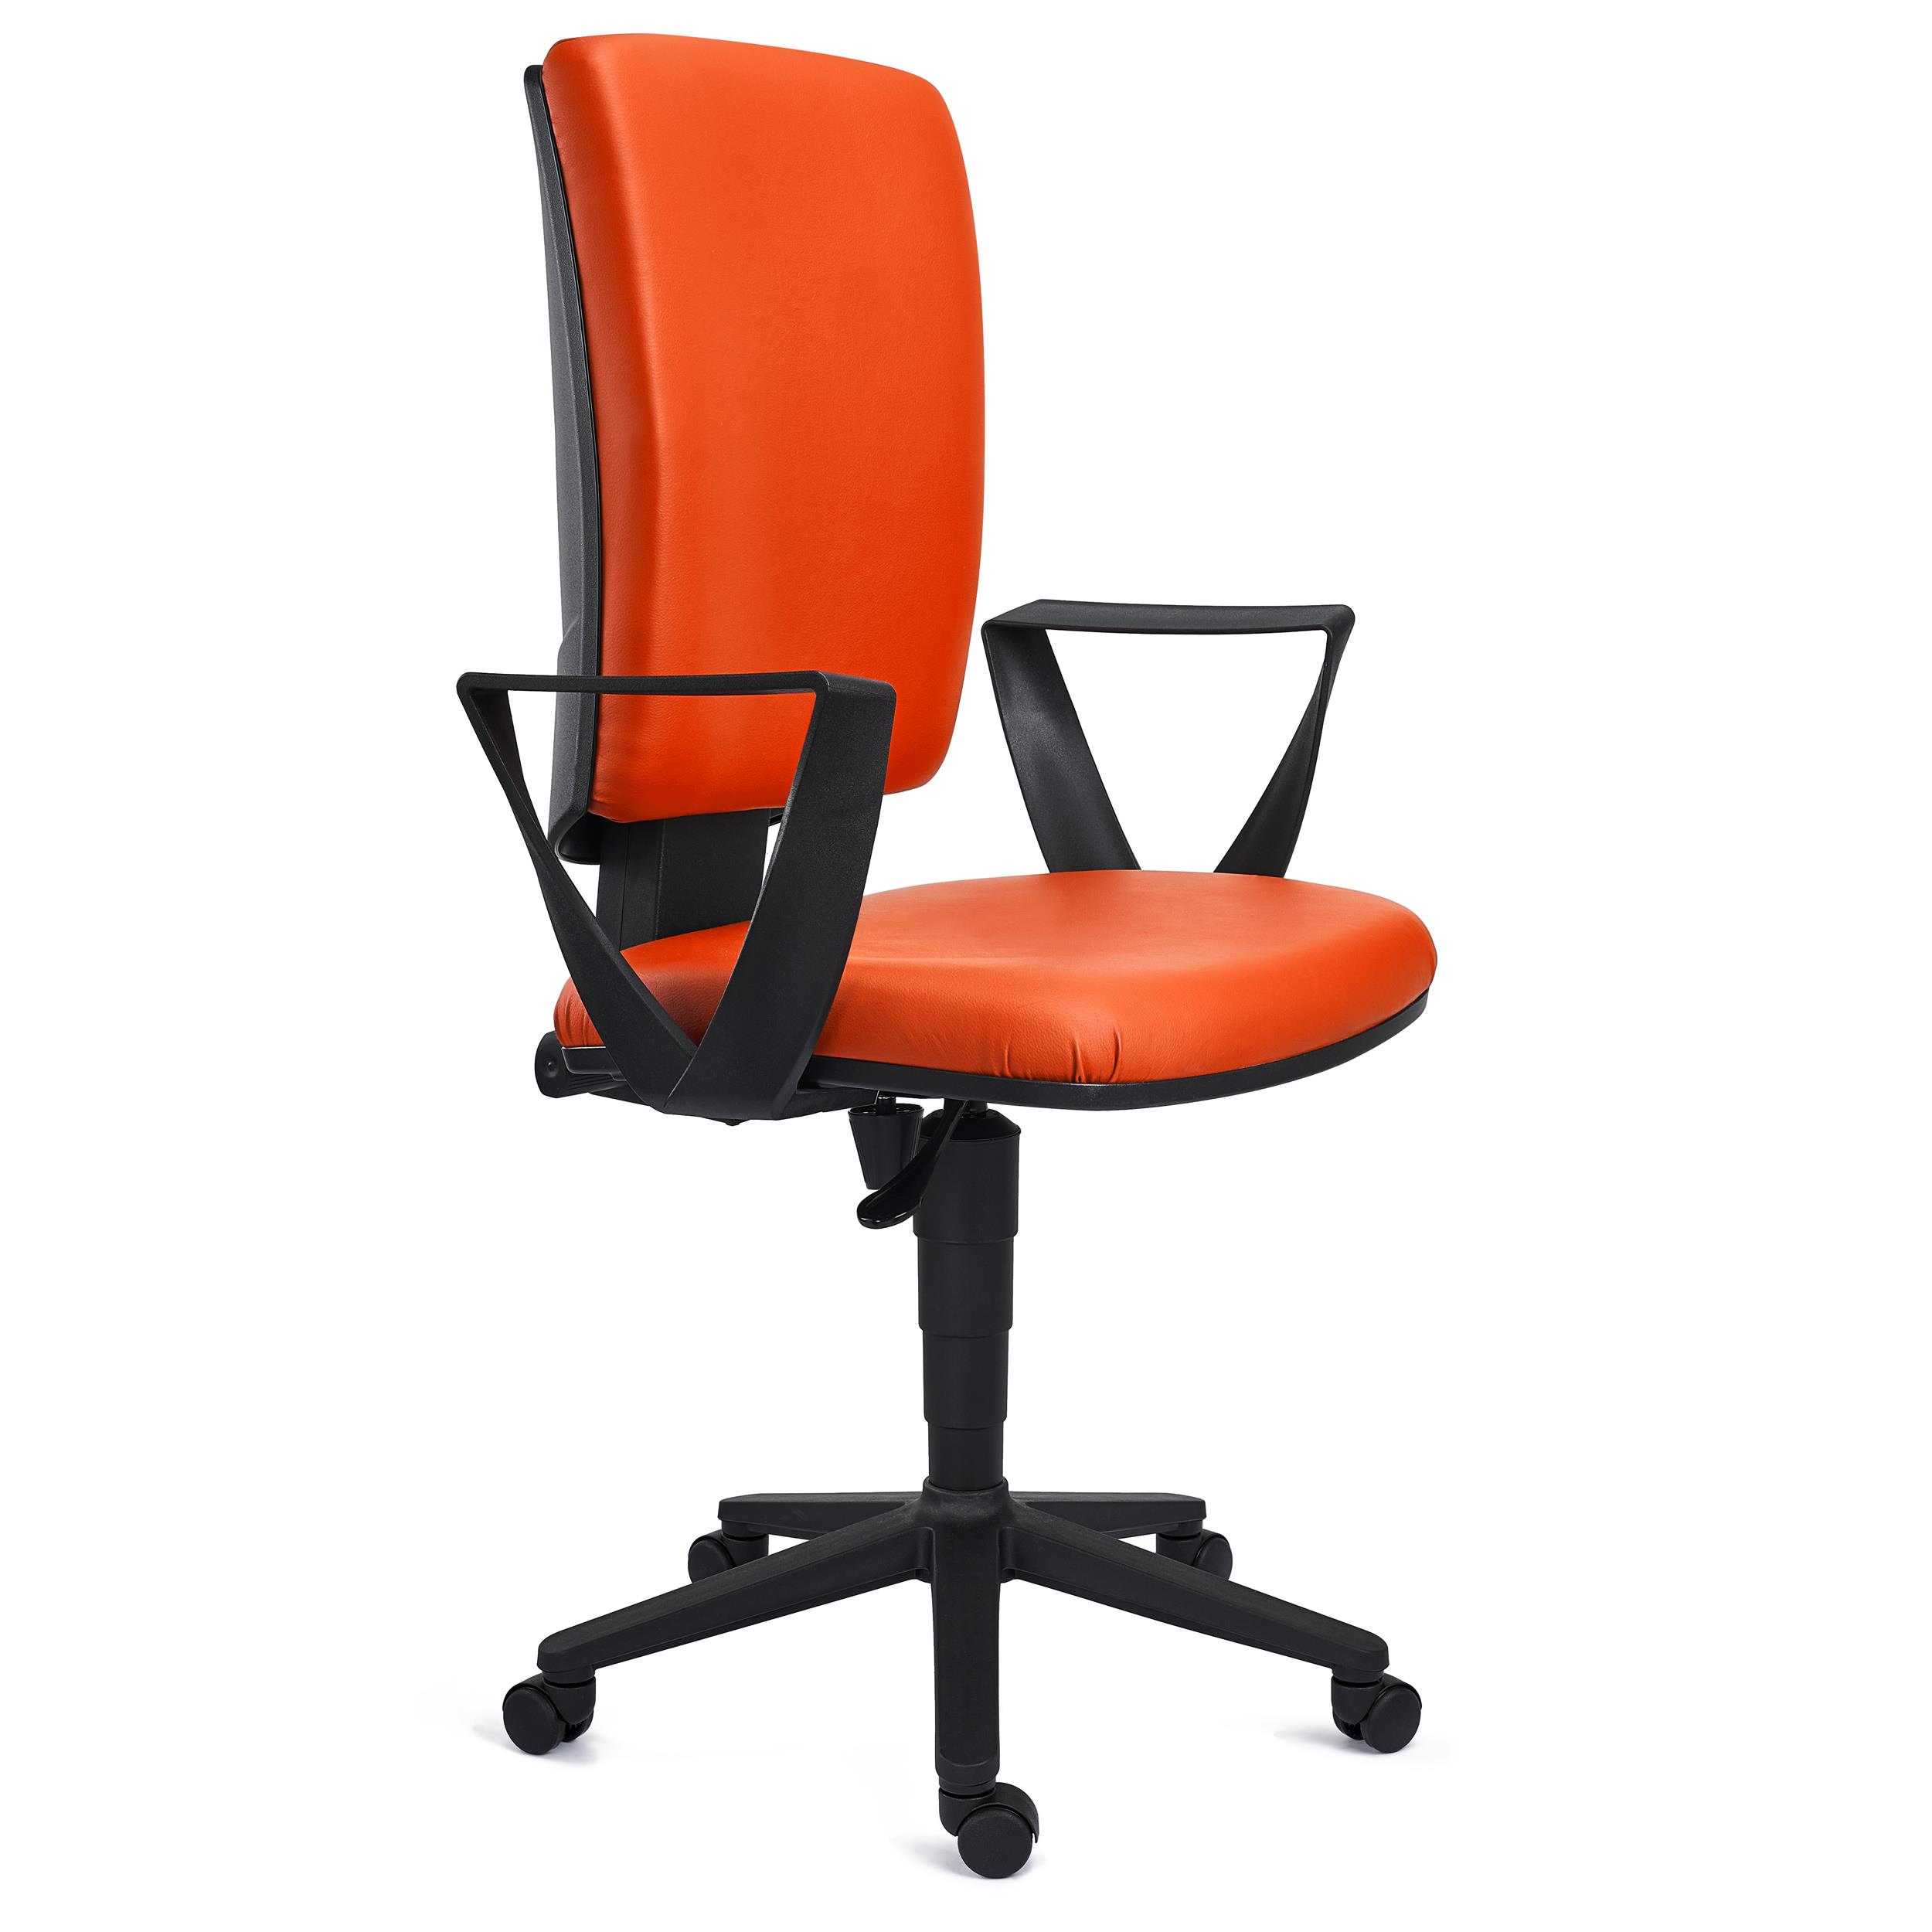 Bürostuhl ATLAS LEDER, verstellbare Rückenlehne, dicke Polsterung, Farbe Orange